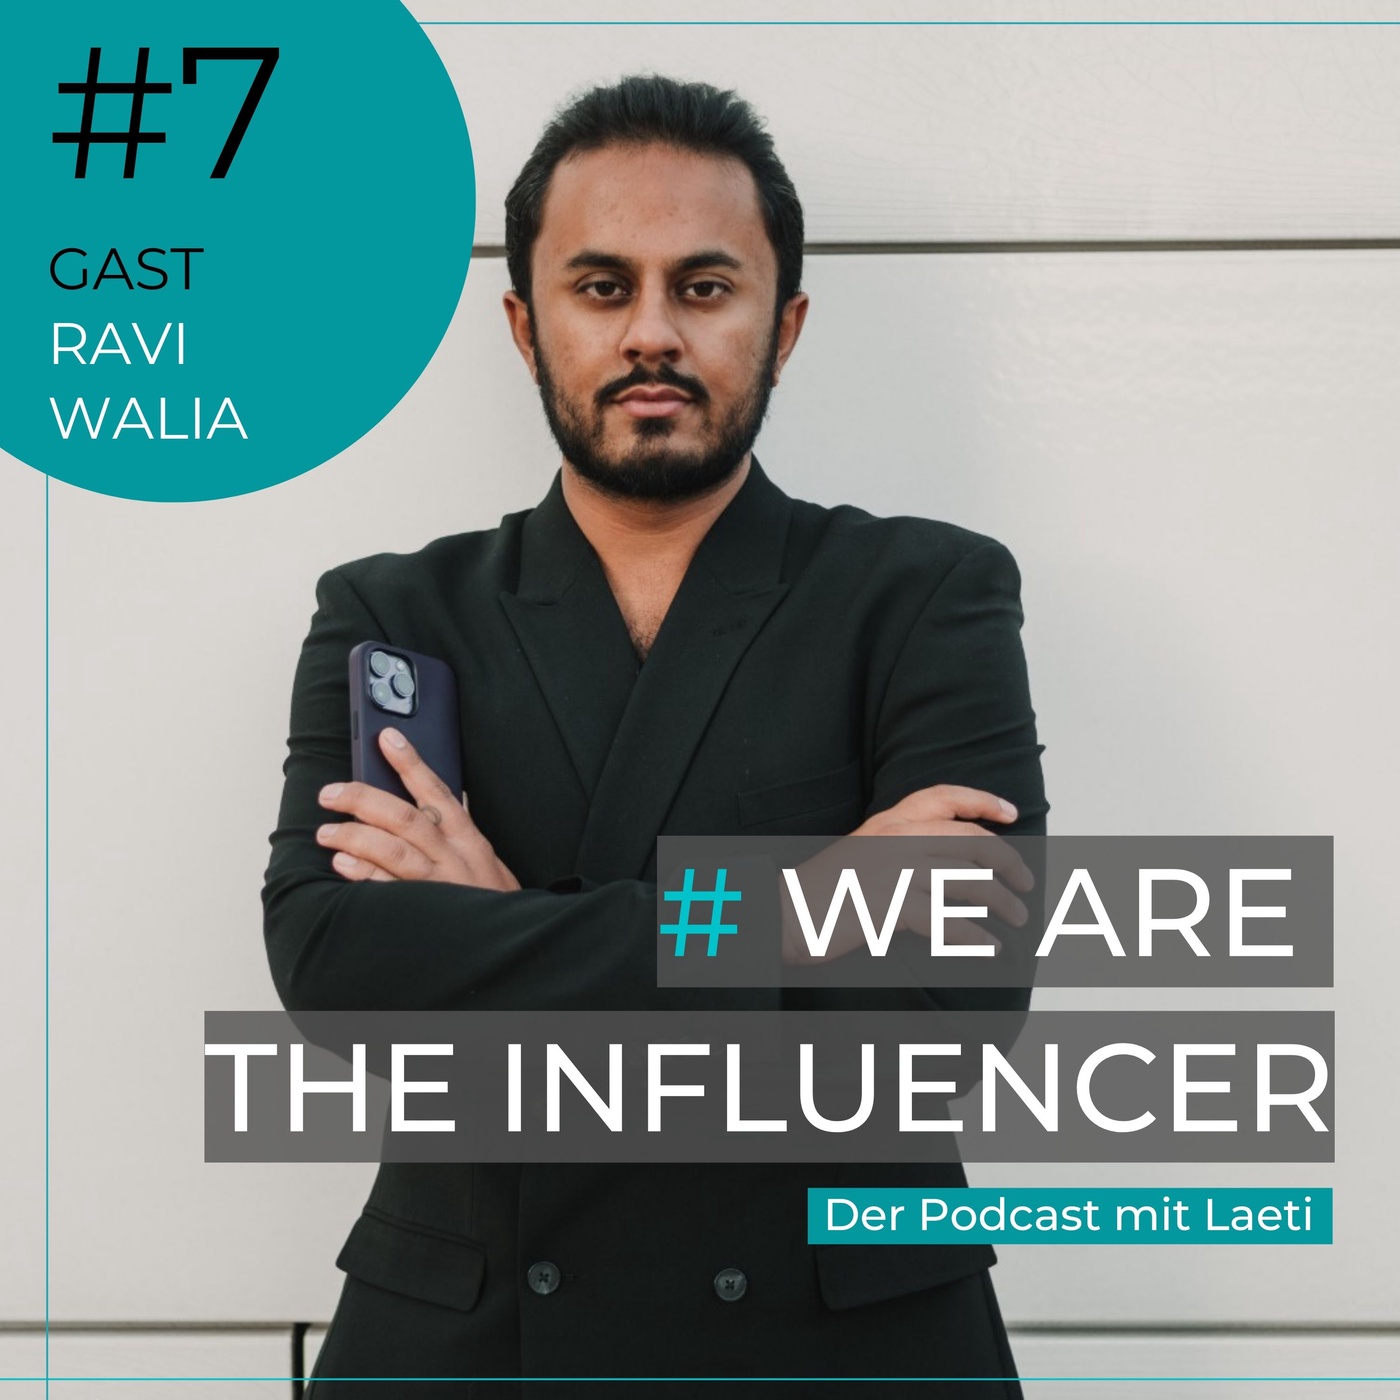 #7 Heutzutage noch mit Social Media durchstarten - geht das überhaupt? | Ravi Walia